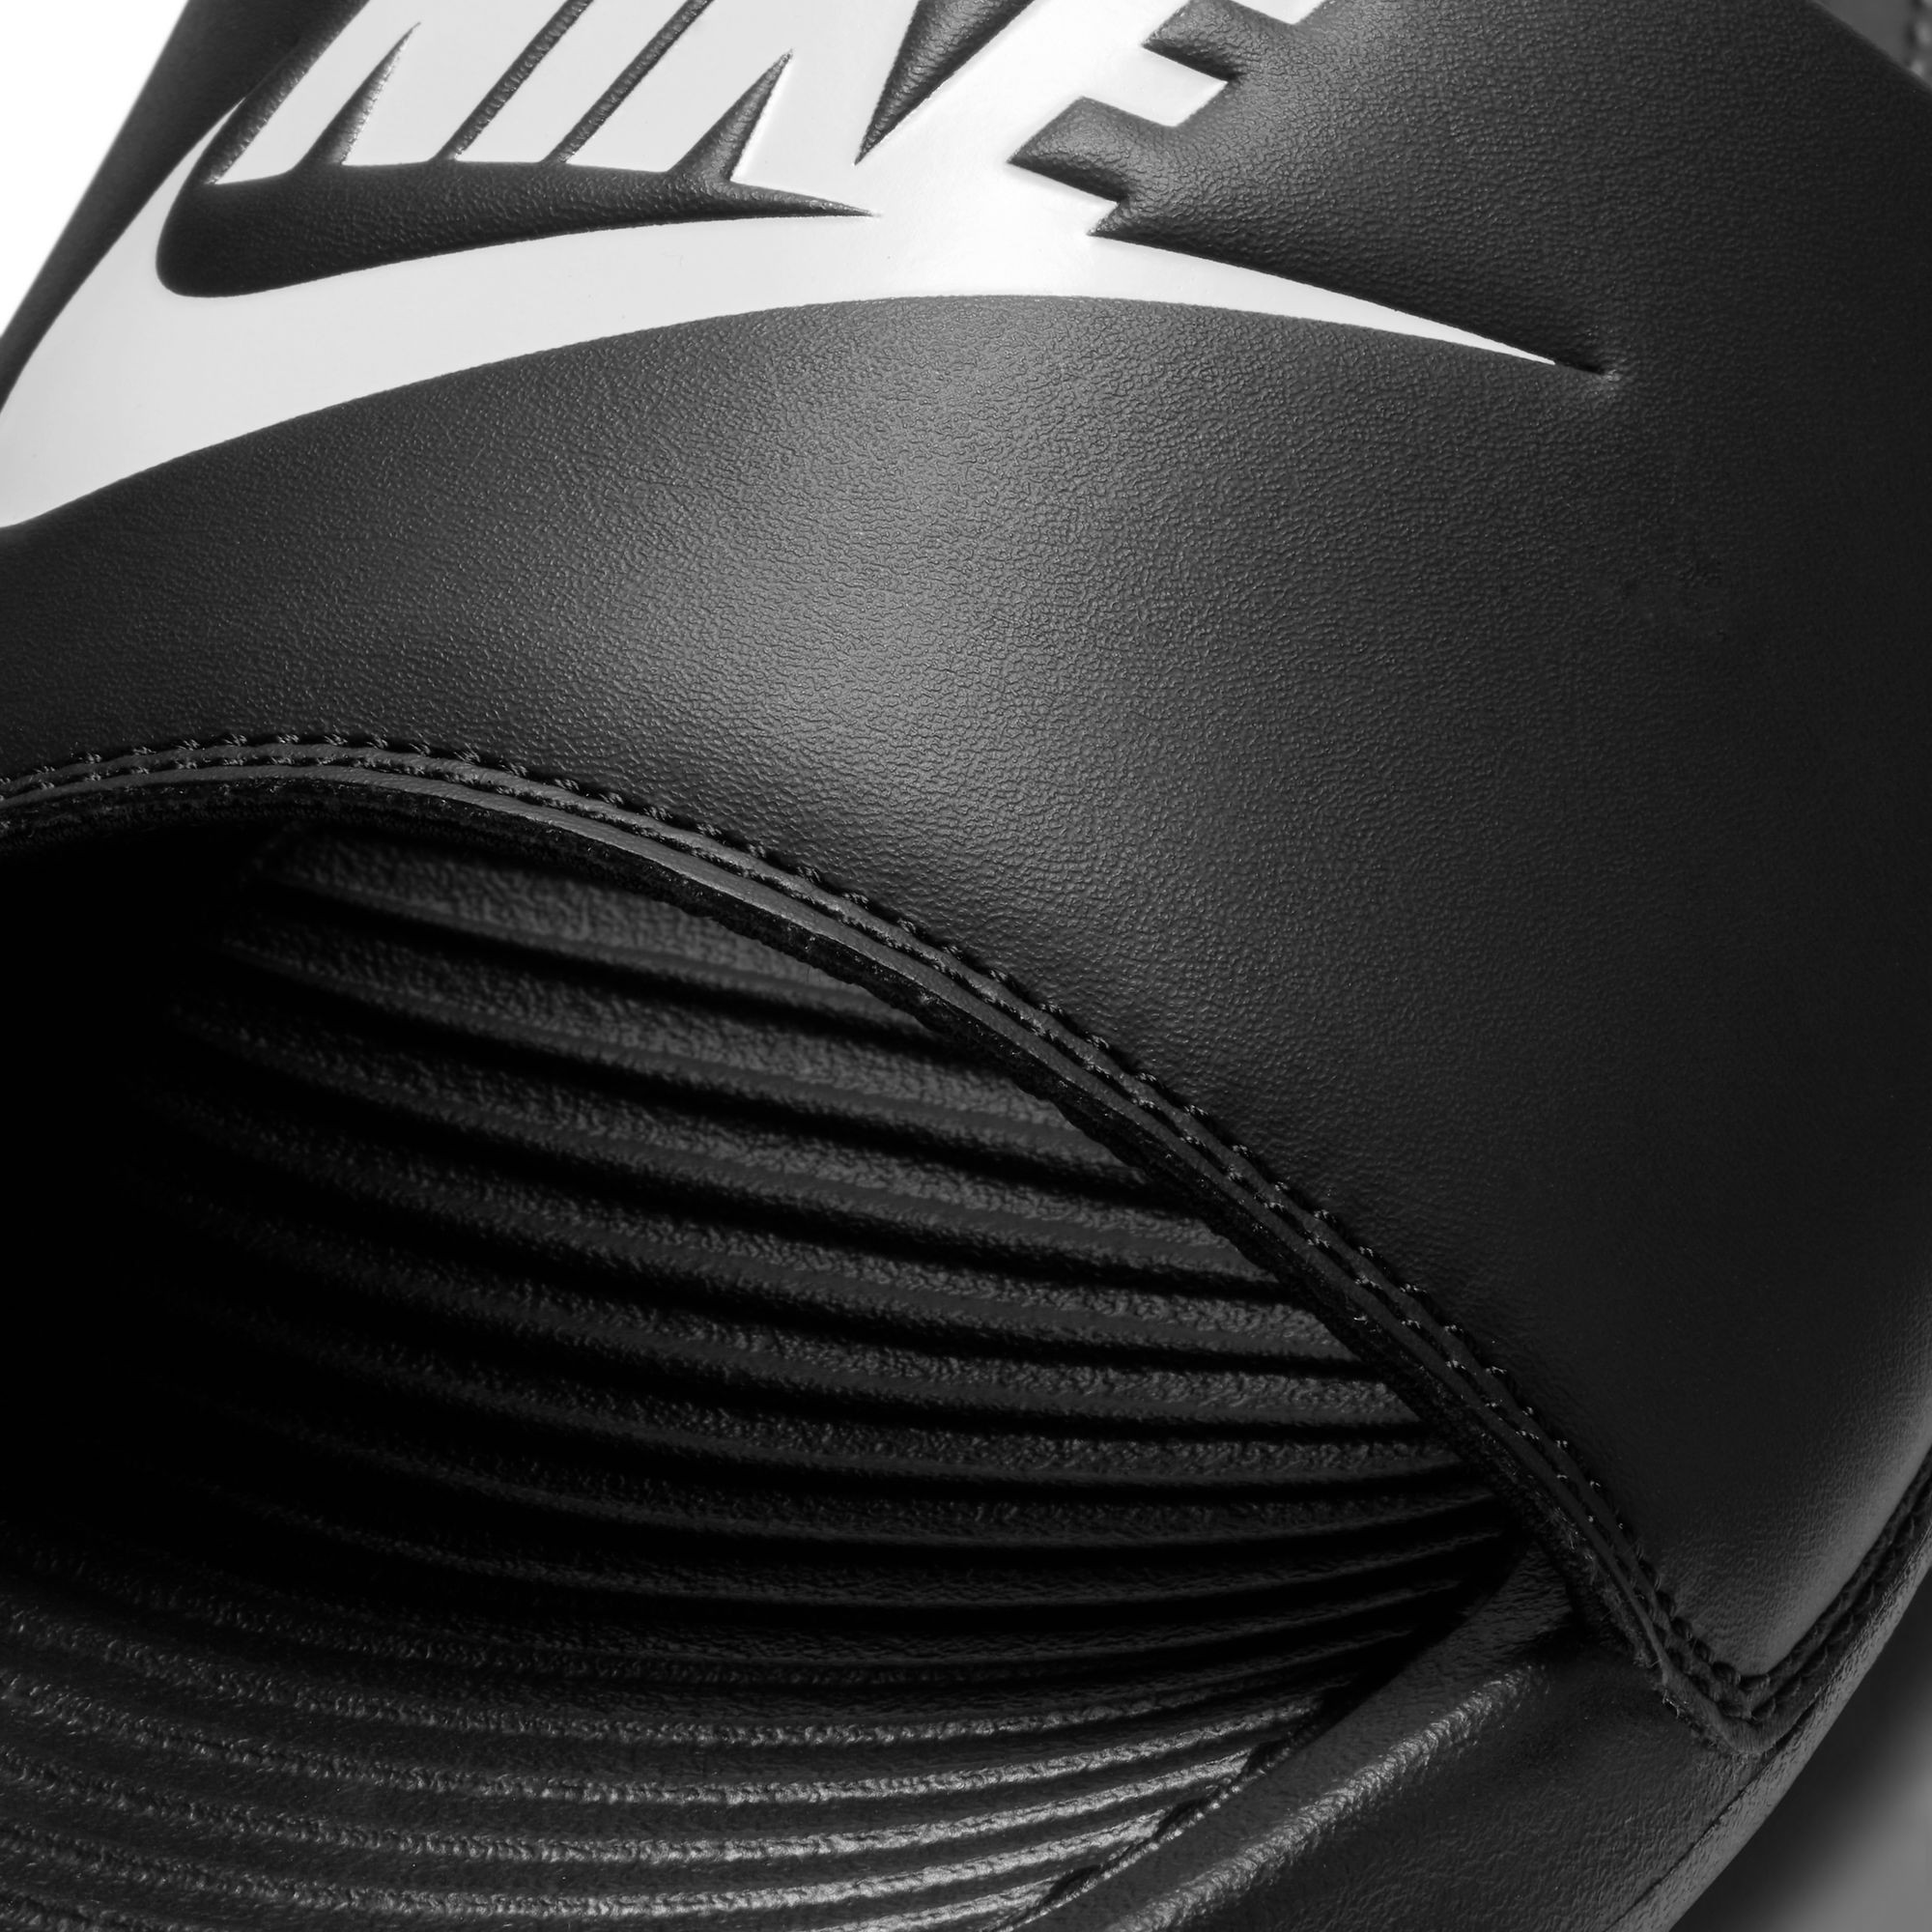 Claquettes pour homme Nike Victori One - Noir/Blanc-Noir - CN9675-002